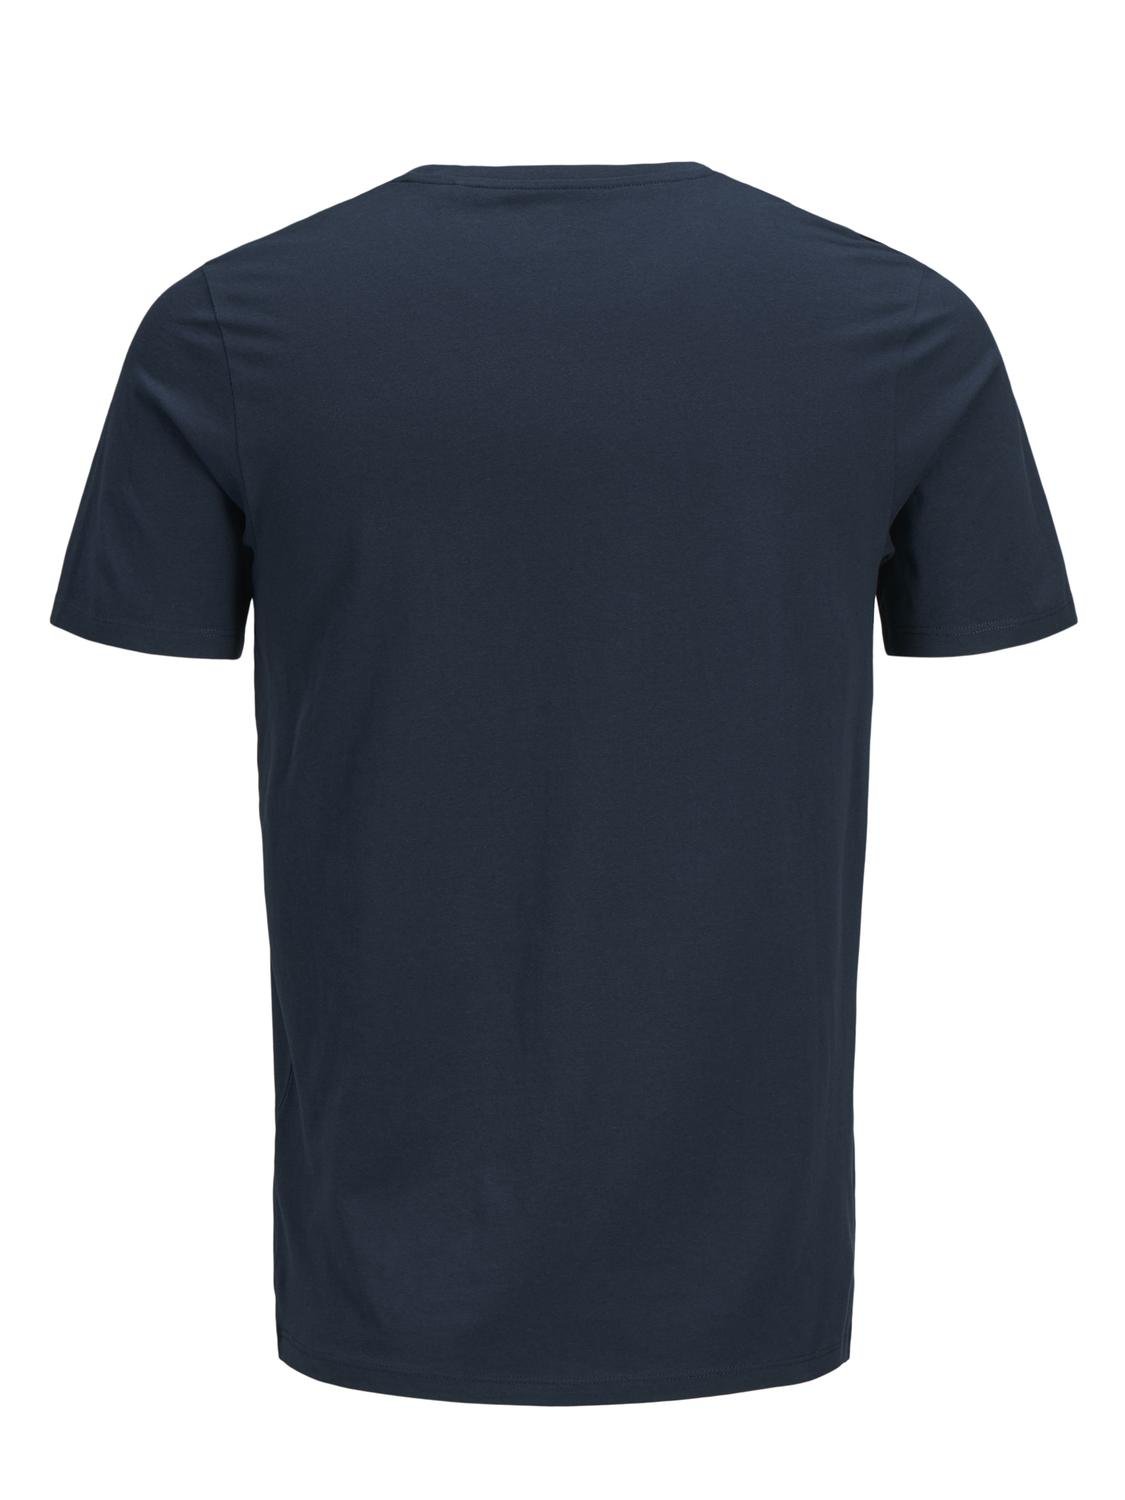 Jack & Jones Logotipas Apskritas kaklas Marškinėliai -Navy Blazer - 12137126